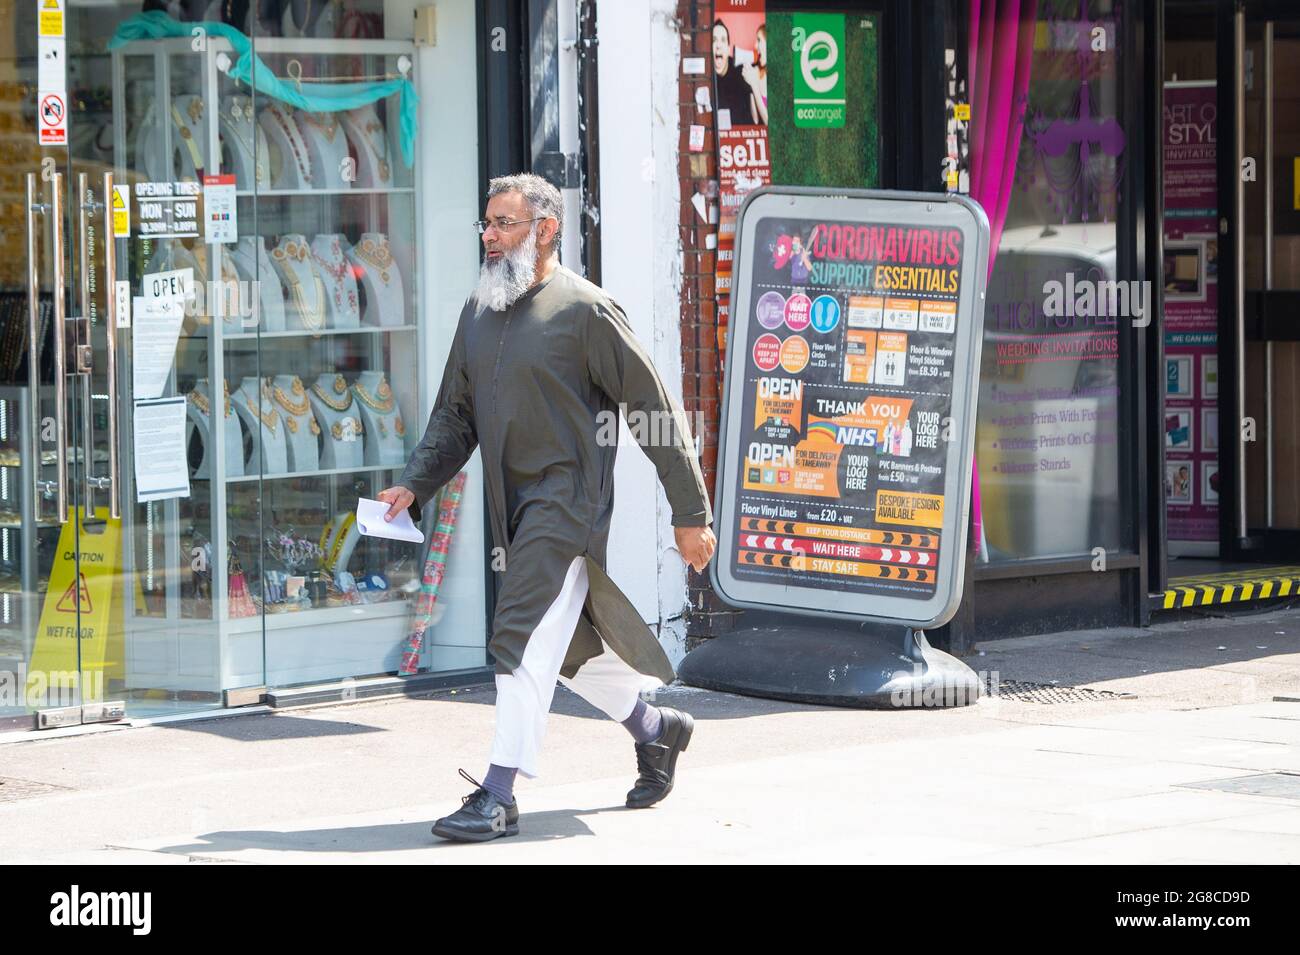 Der radikale Prediger Anjem Choudary in Ilford, Ost-London, nachdem er nach seiner Entlassung aus dem Gefängnis die Rede in der Öffentlichkeit eingeschränkt hatte, ging zu Ende. Bilddatum: Montag, 19. Juli 2021. Stockfoto